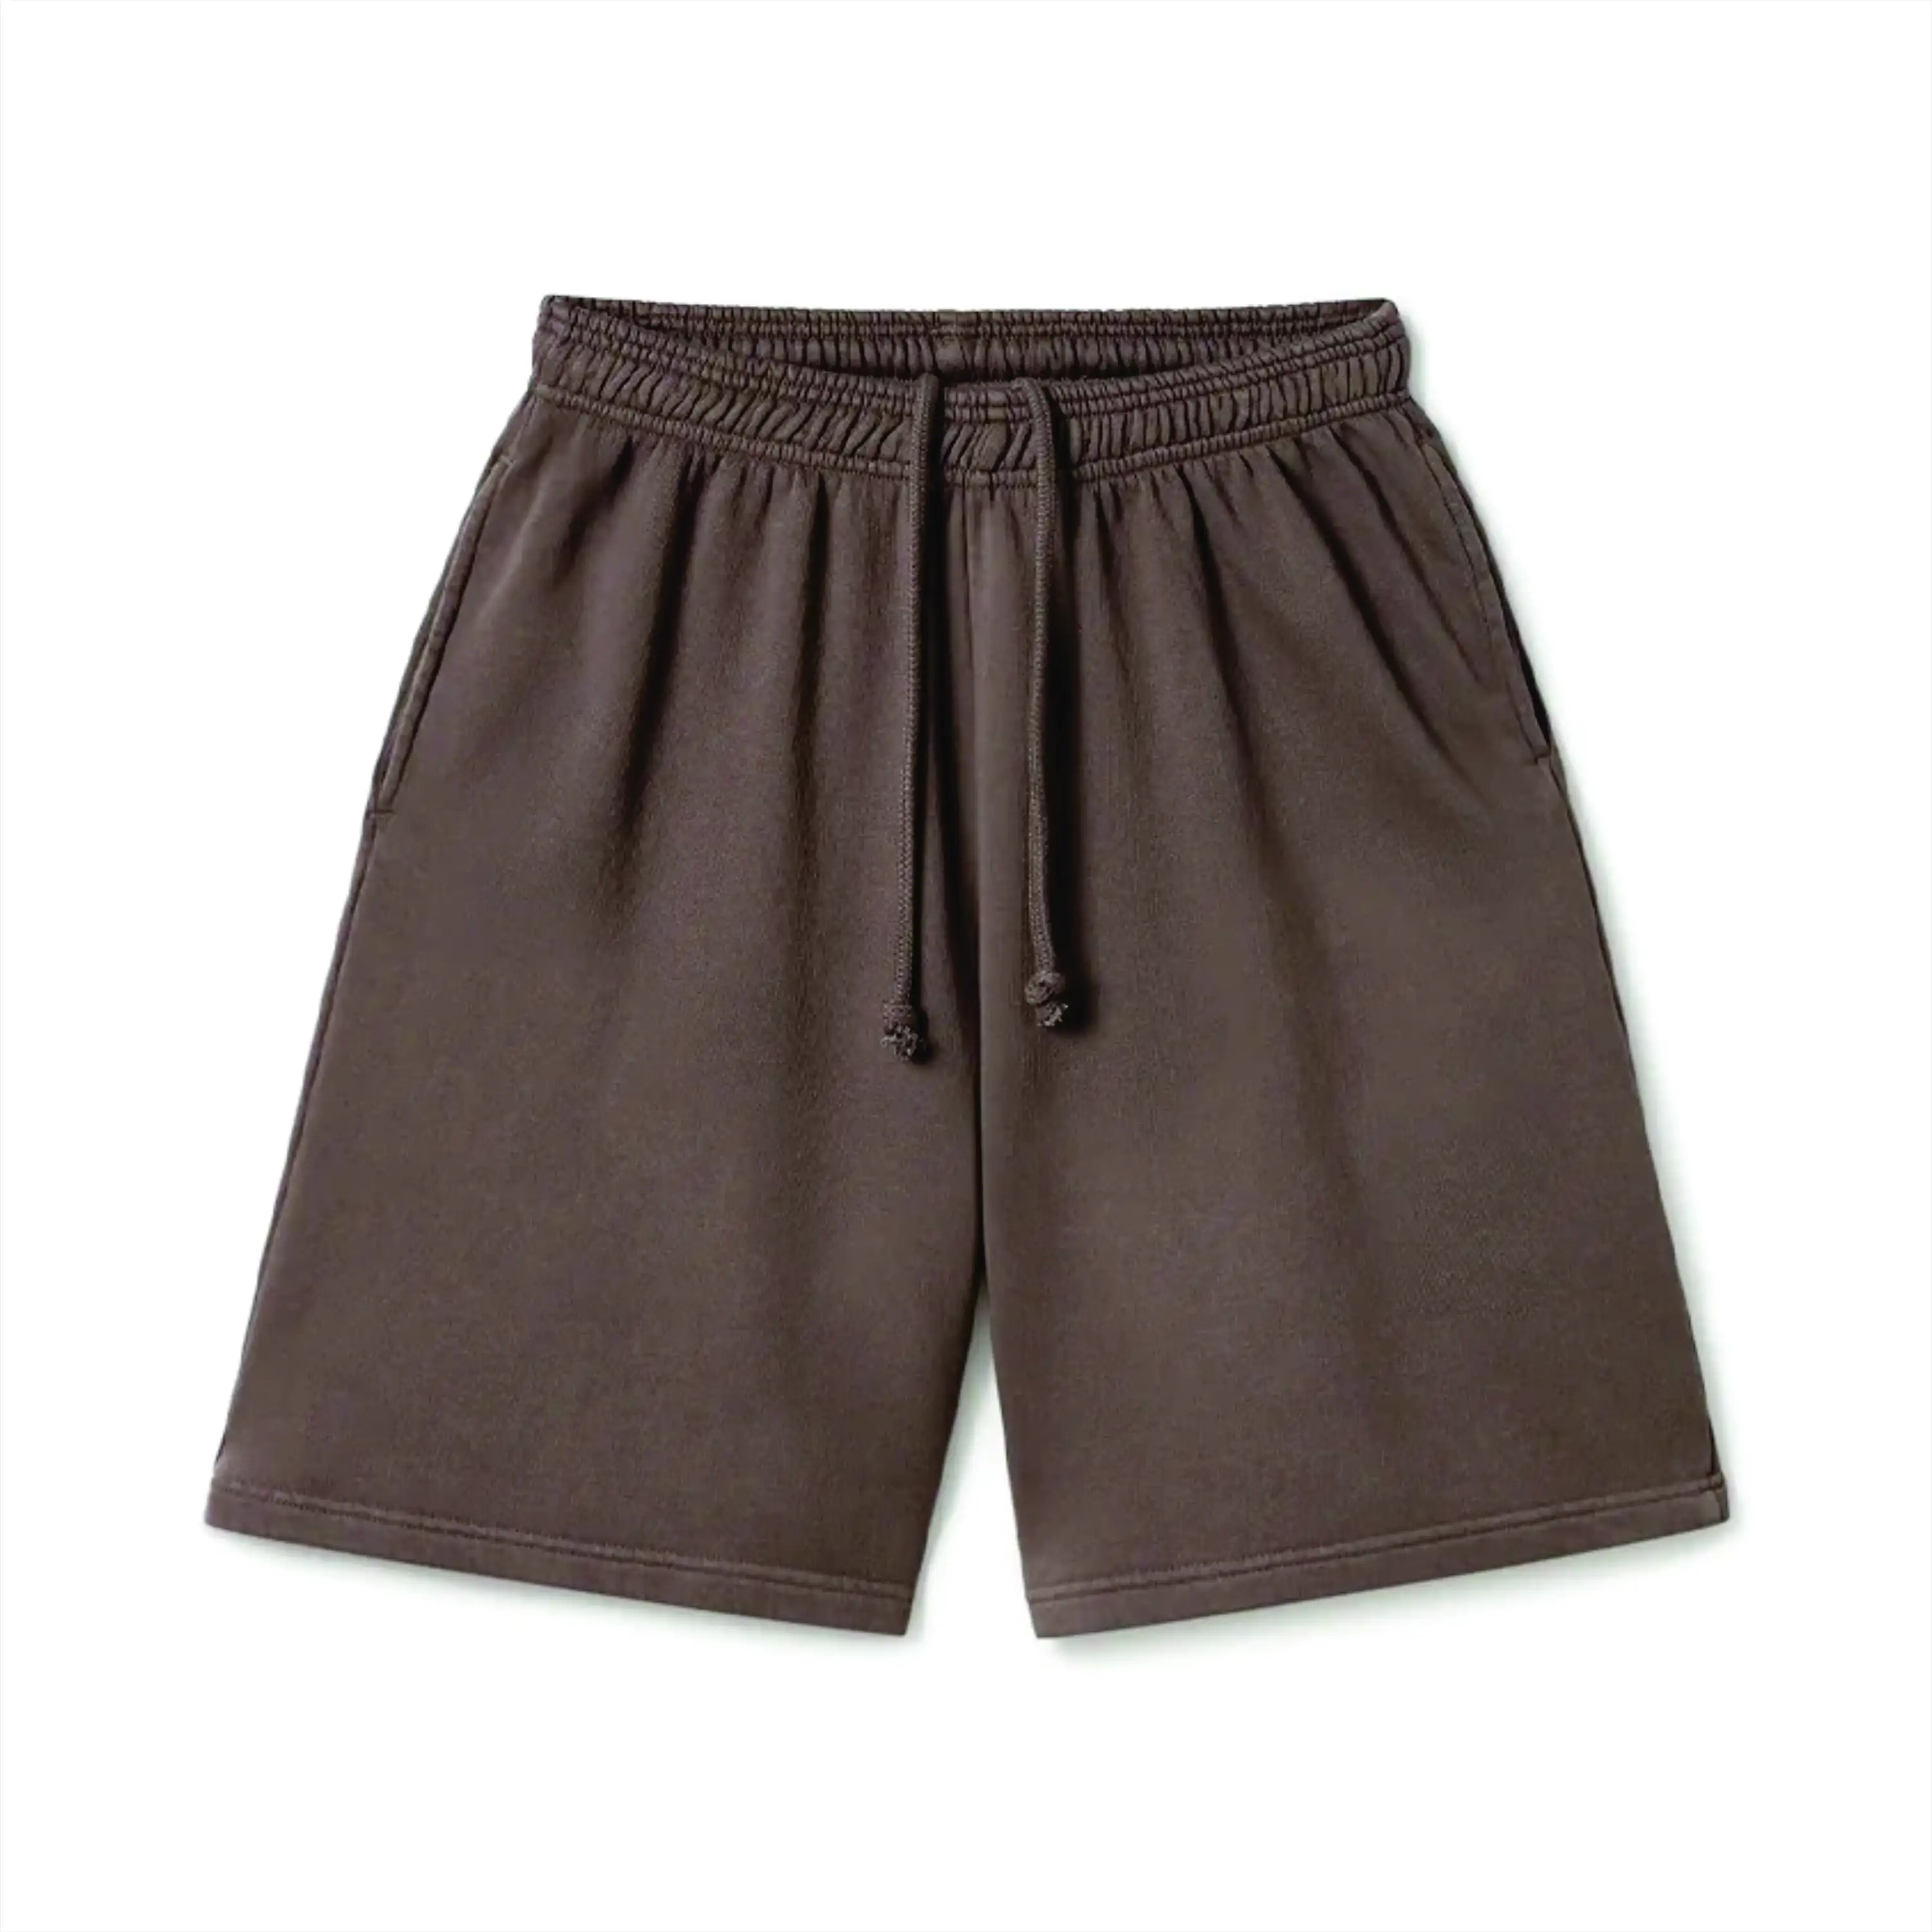 Pantaloncini di qualità autunno stagione in cotone spugna francese shorts da uomo con spedizione rapida in felpa di cotone 100%